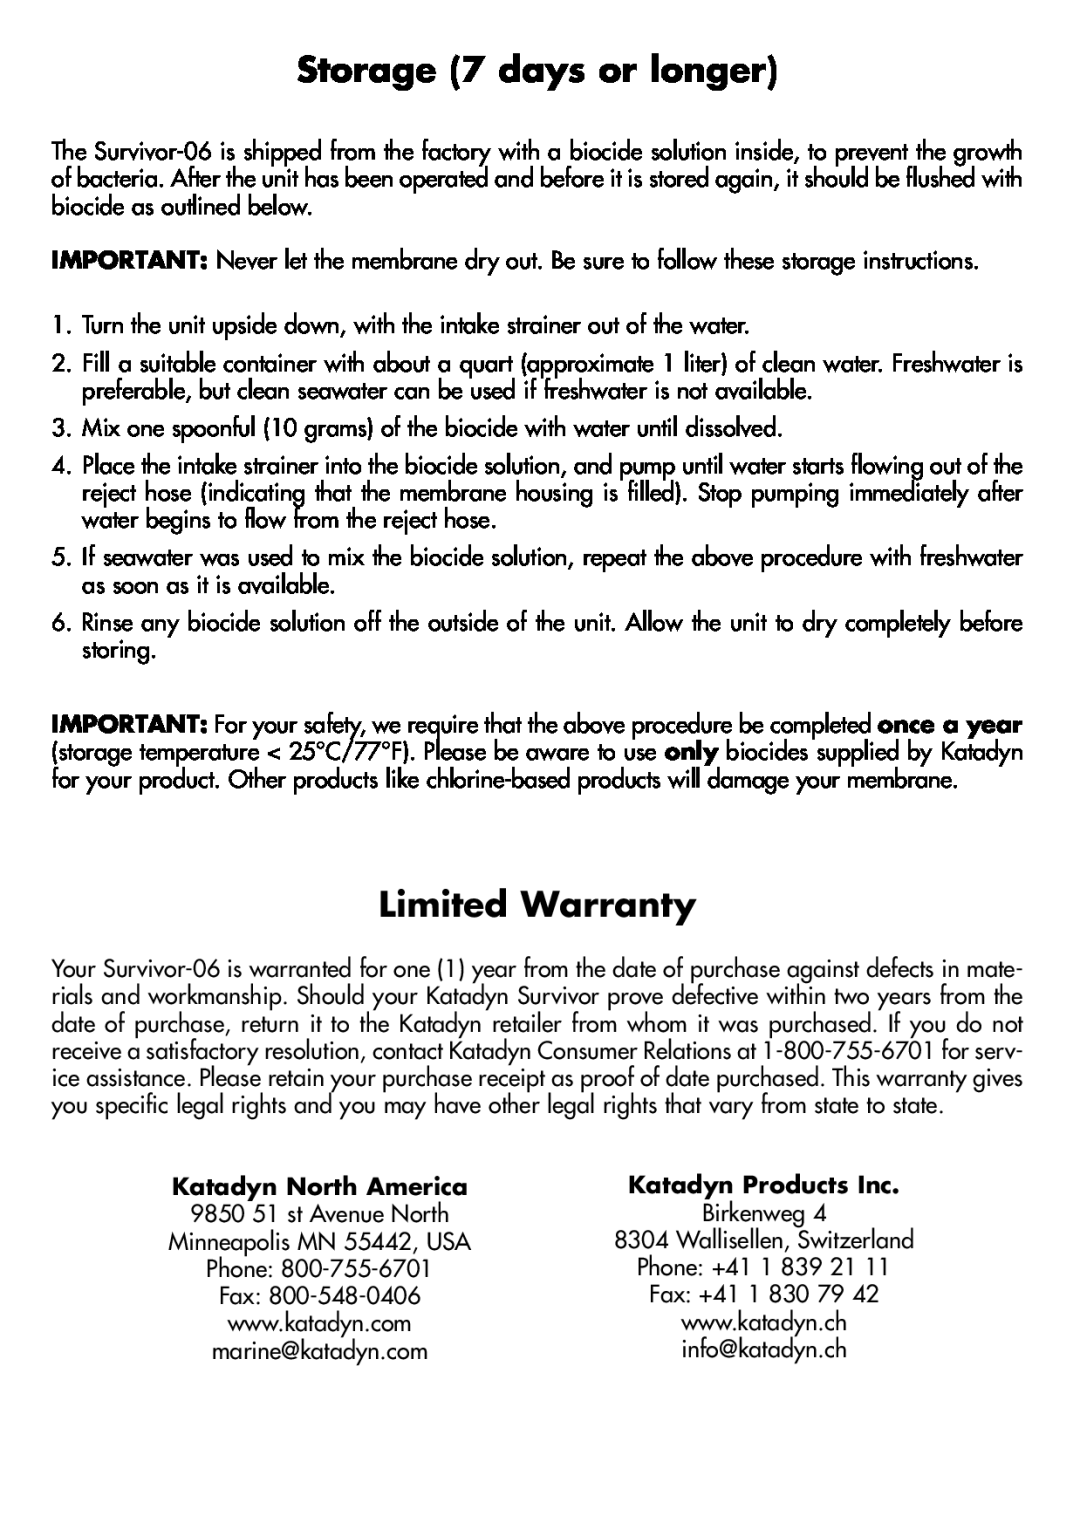 Katadyn 8013418, 8013419 manual Storage 7 days or longer, Limited Warranty, Katadyn North America, Katadyn Products Inc 